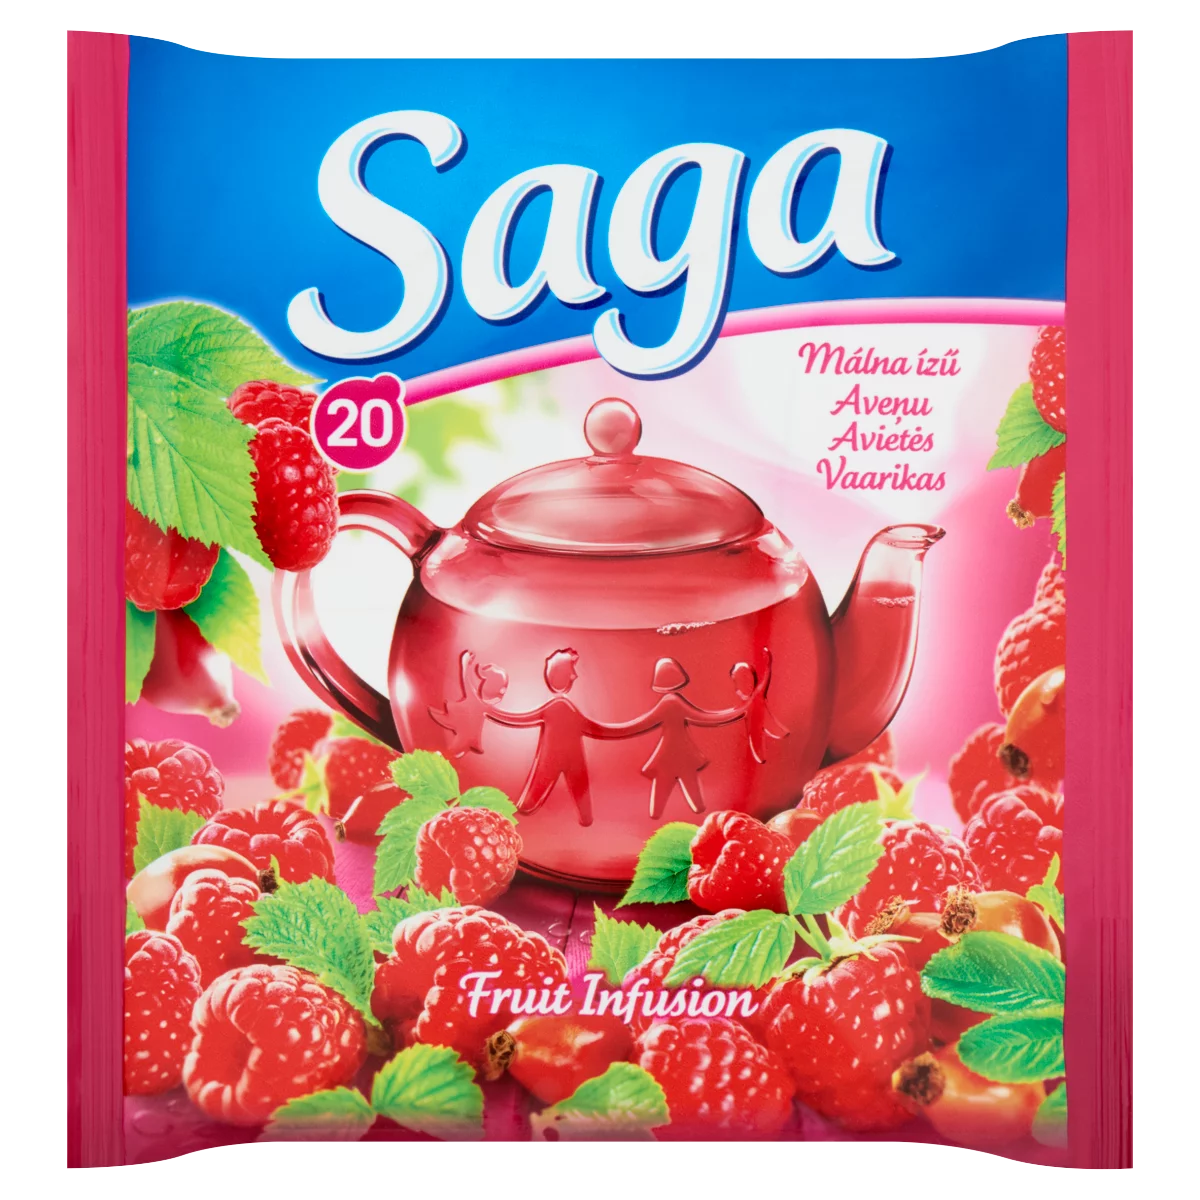 Saga málna ízű gyümölcstea 20 filter